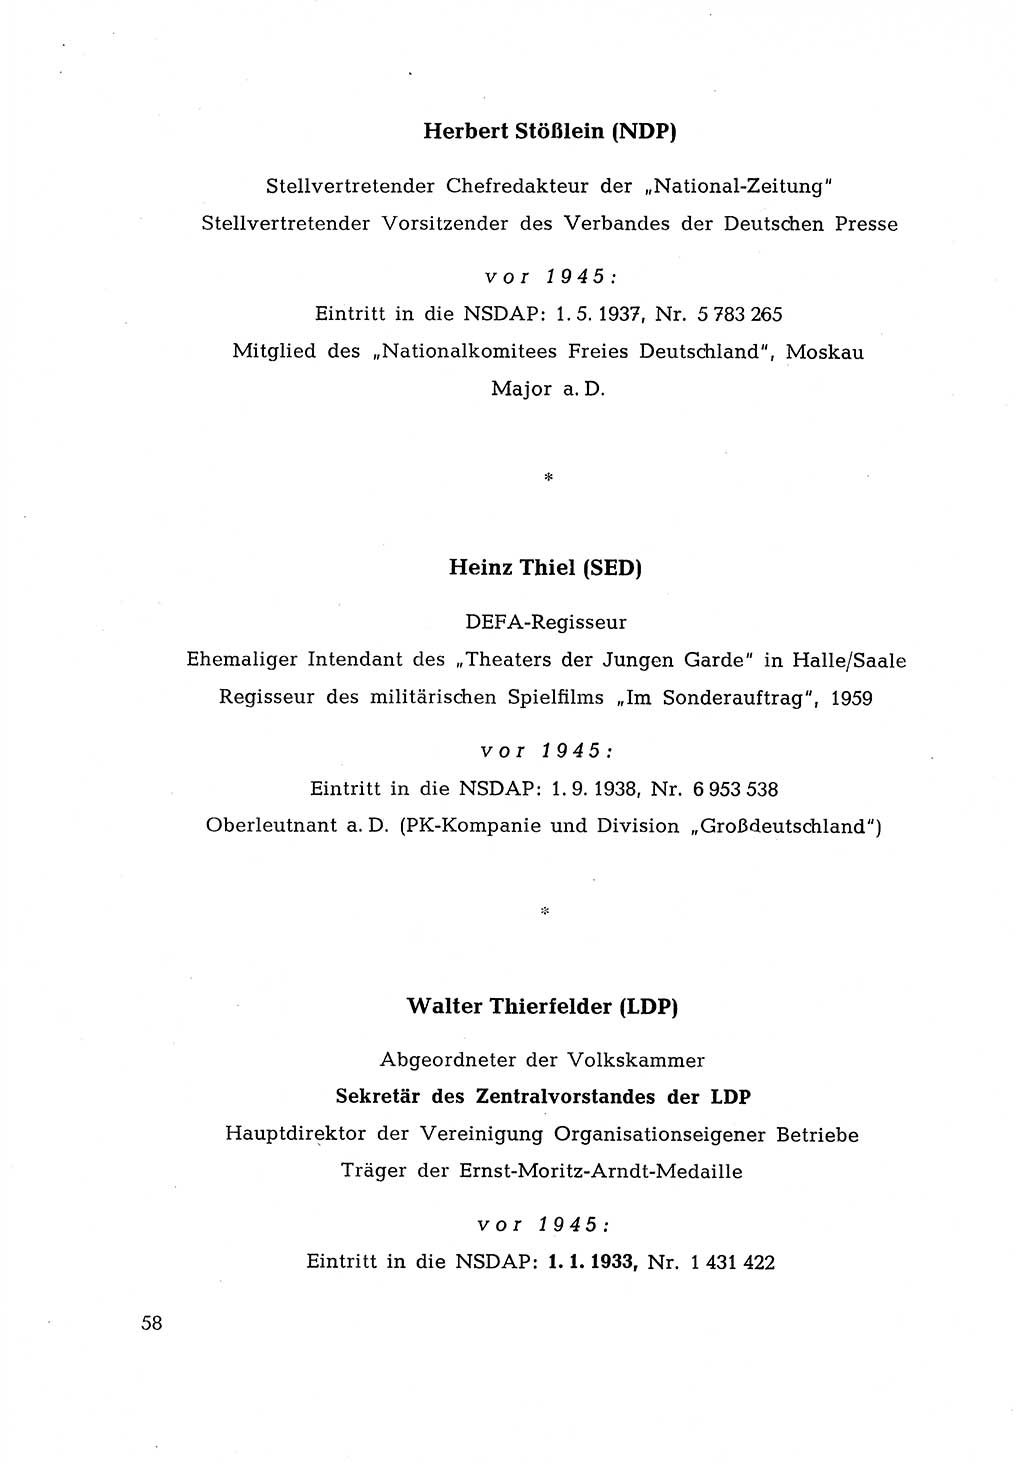 Ehemalige Nationalsozialisten in Pankows Diensten [Deutsche Demokratische Republik (DDR)] 1965, Seite 58 (Ehem. Nat.-Soz. DDR 1965, S. 58)